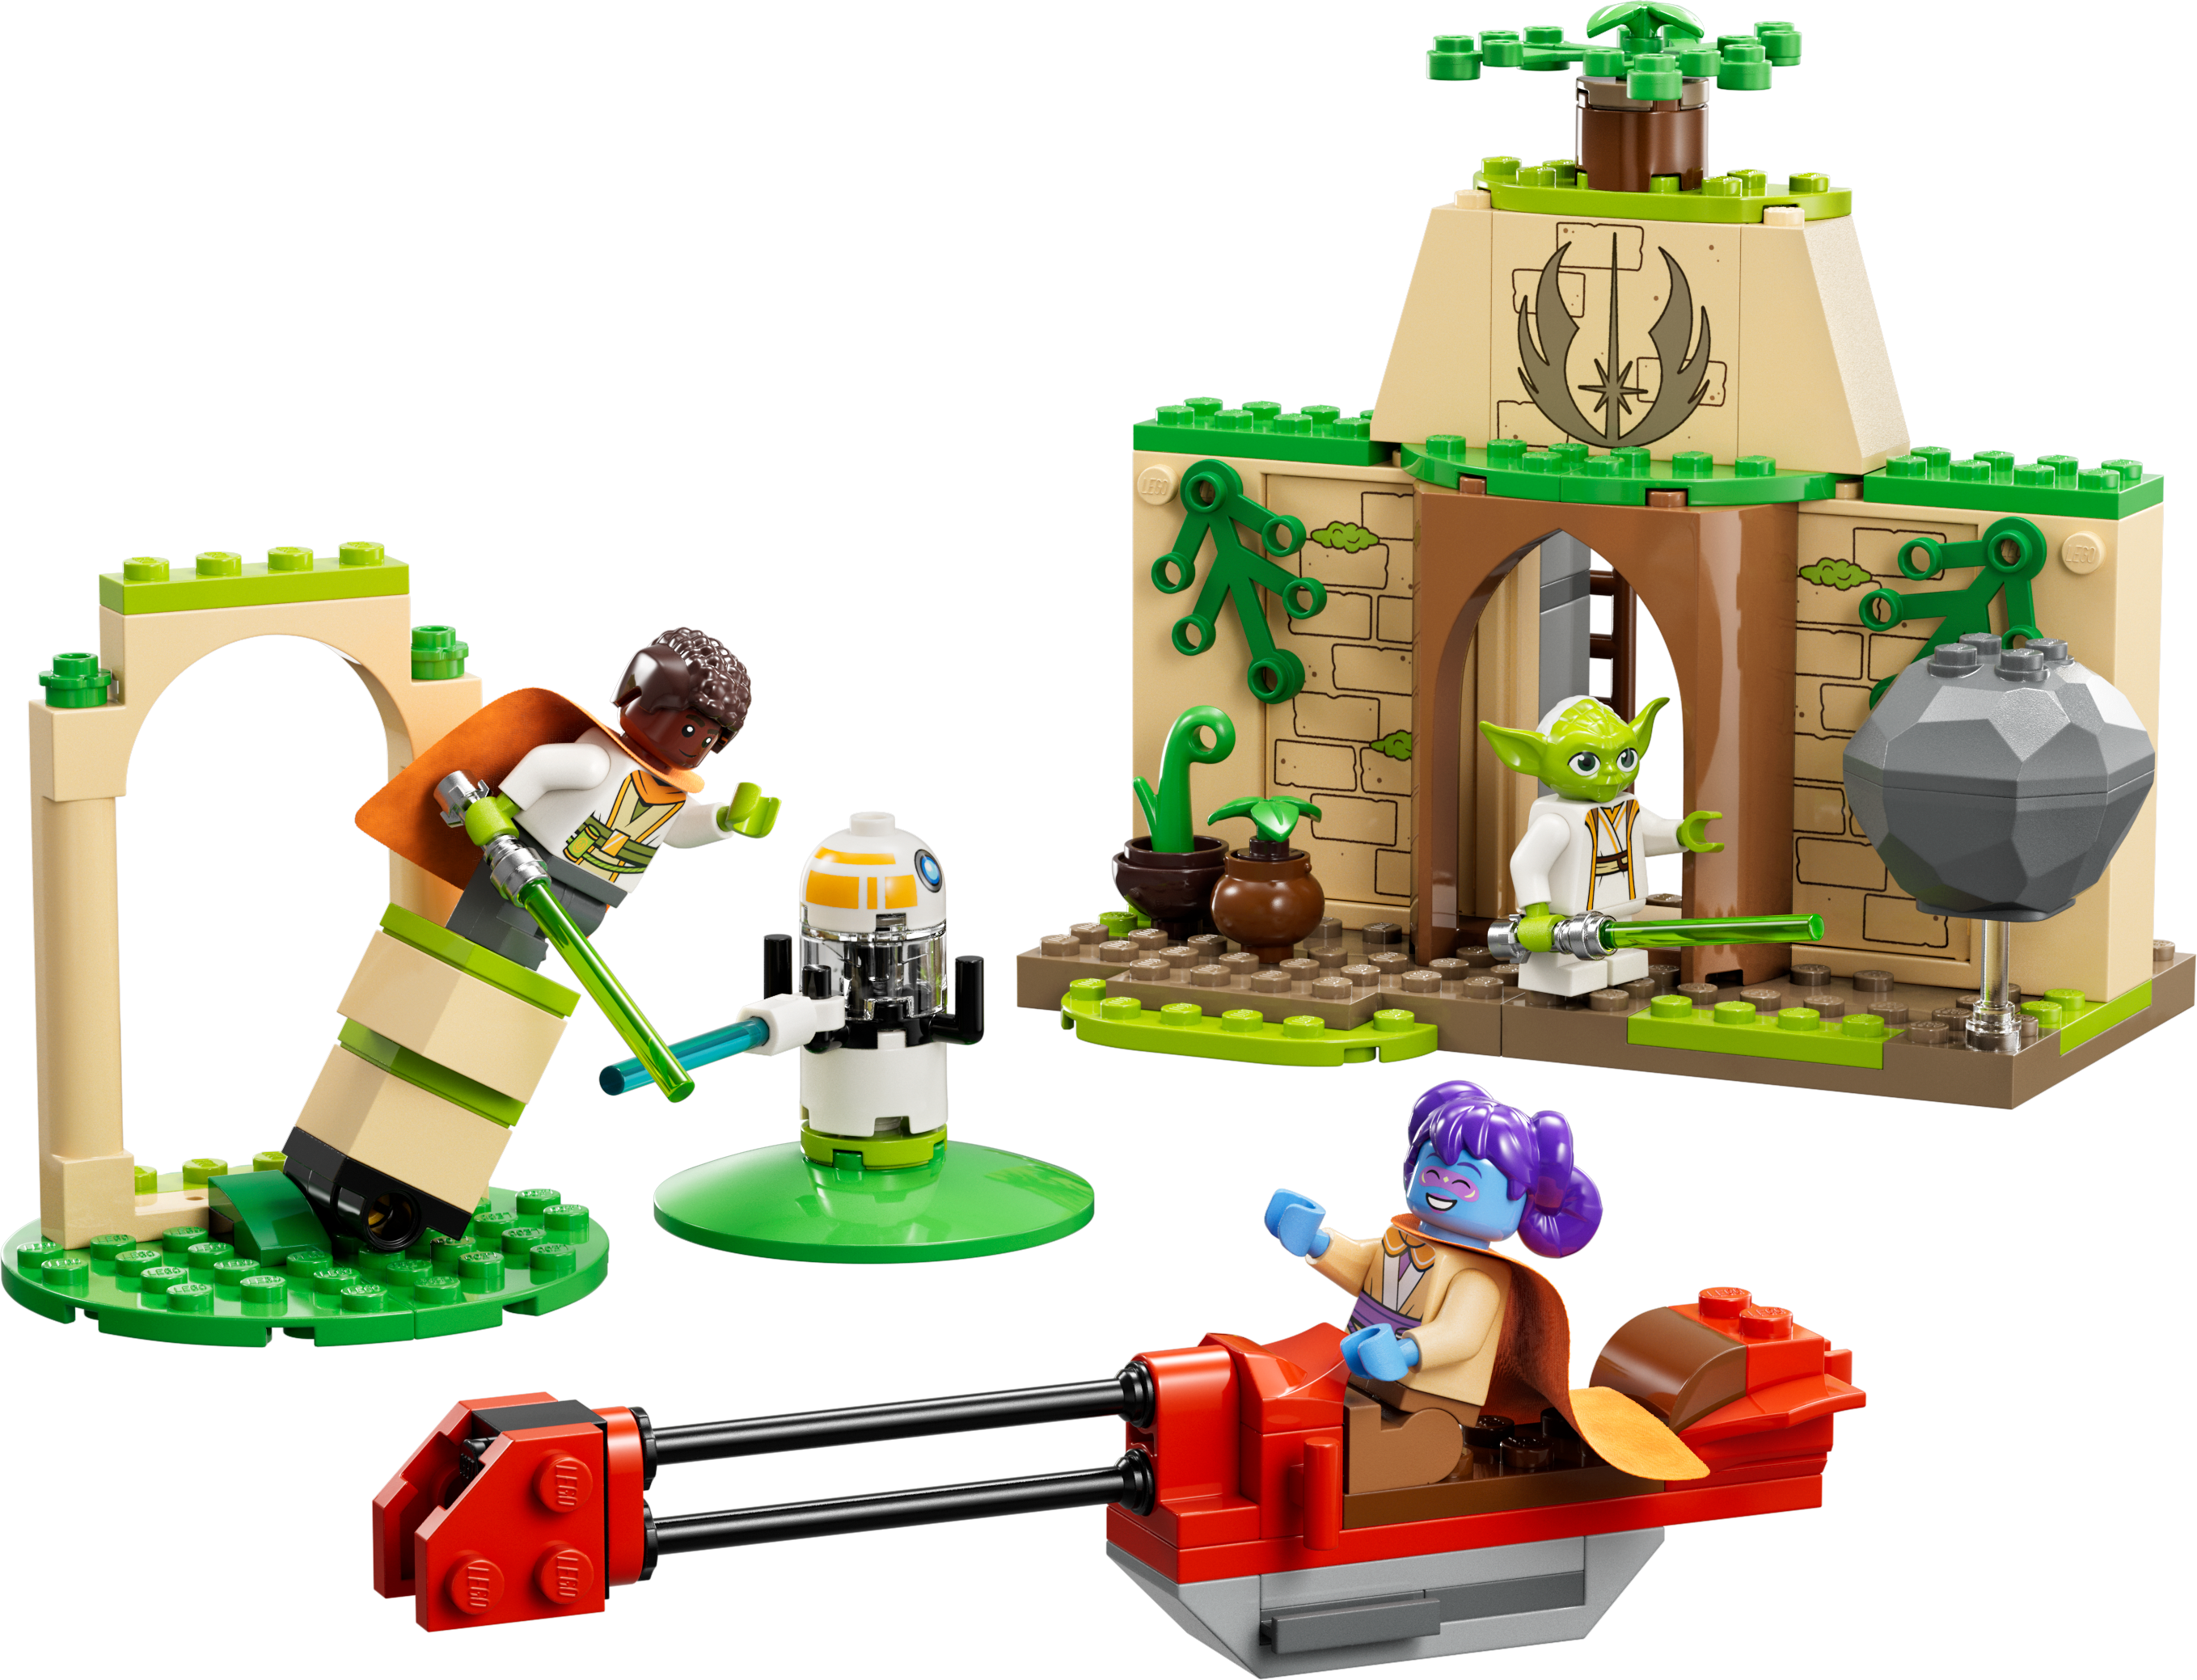 Конструктор LEGO Star Wars Храм джедаїв Tenoo, 124 деталі (75358) - фото 2